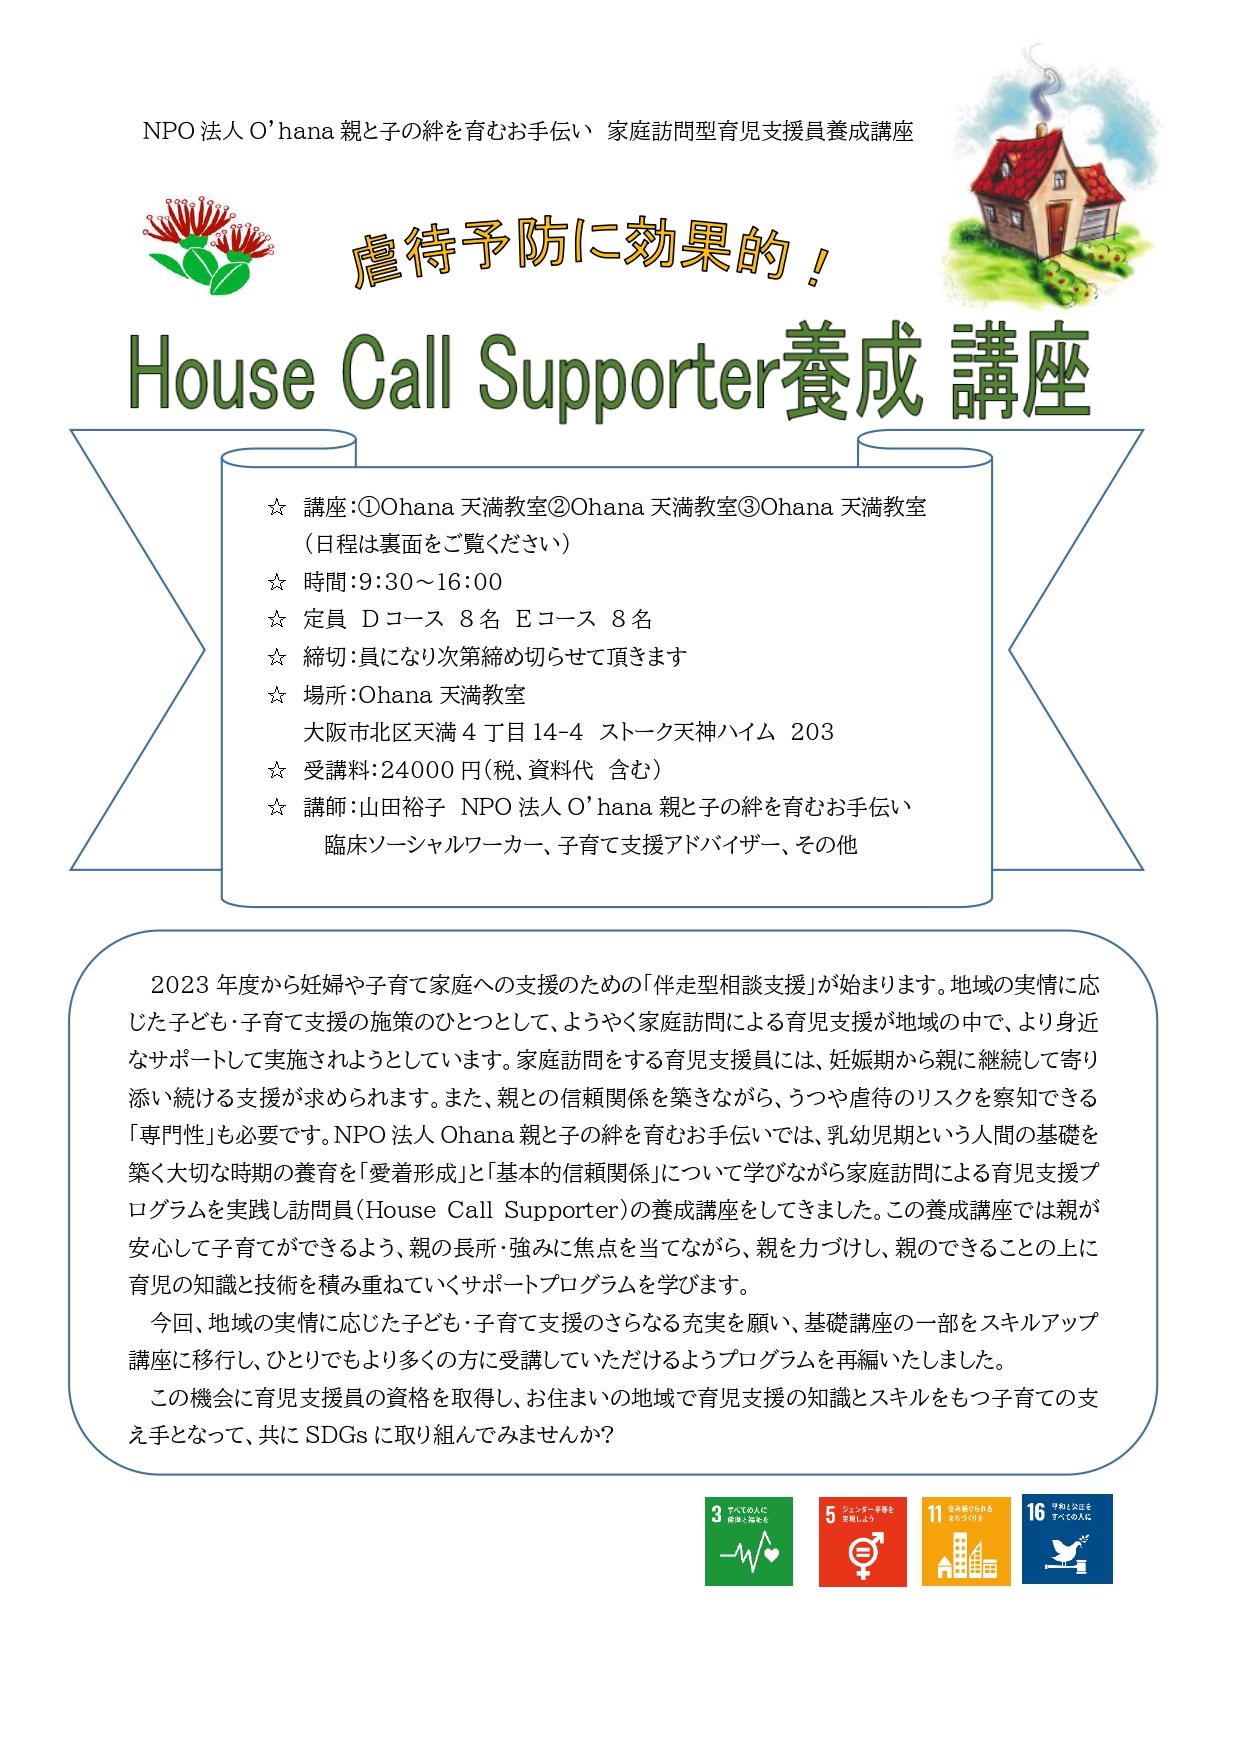 【大阪】10月開講「House Call Supporter養成講座」のお知らせのチラシ画像